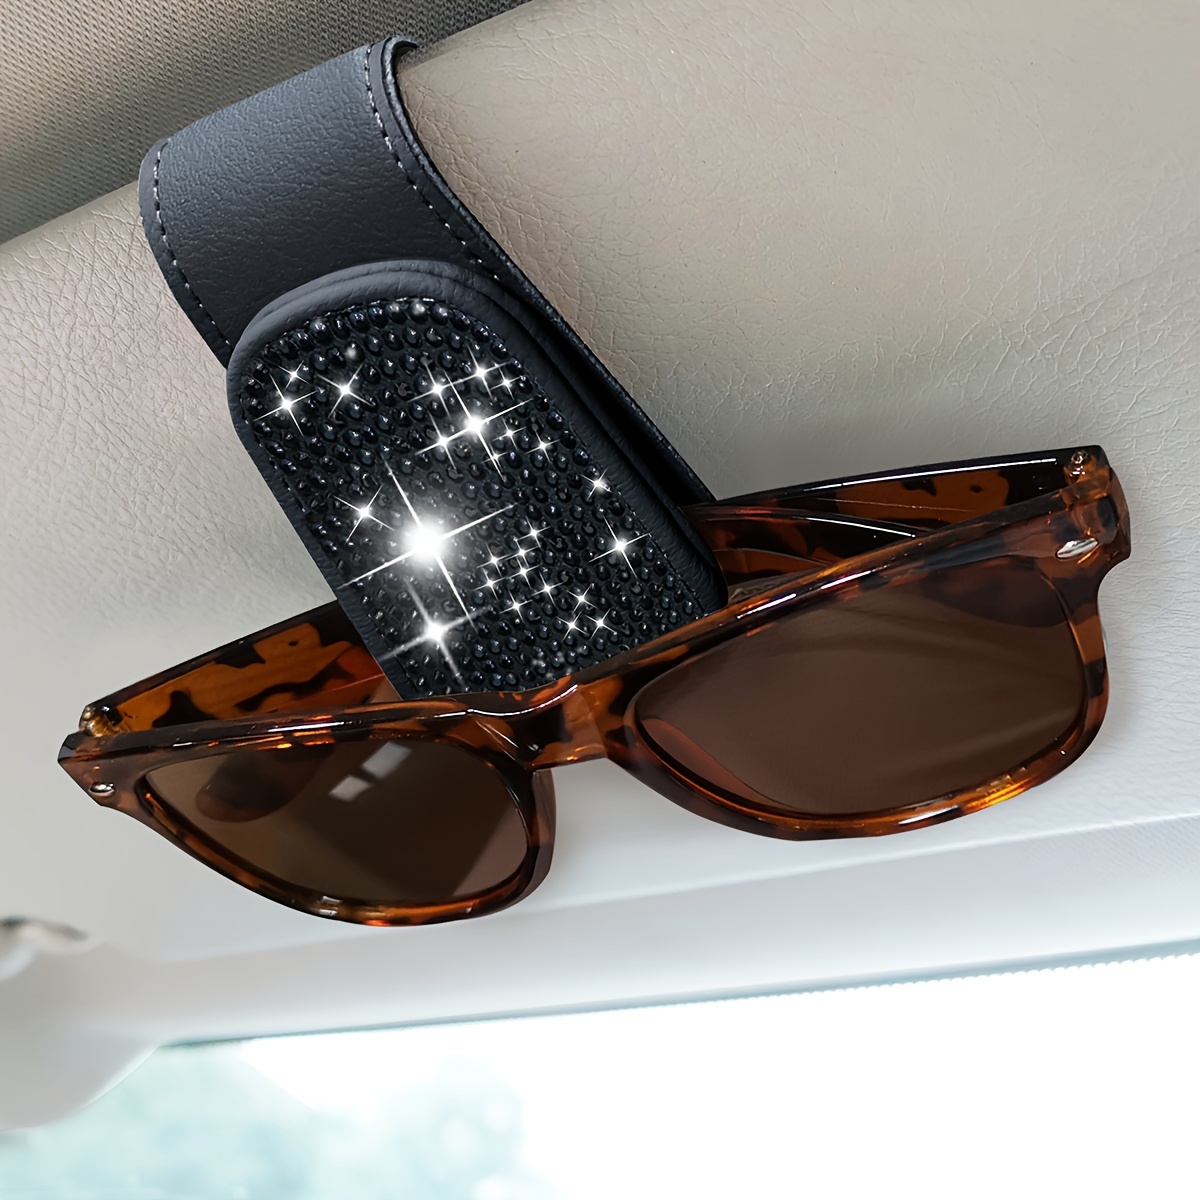 Leder-Brillenhalter für Auto, Universal Sonnenbrille Halter  Sonnenbrillenhalter für Autobrillenhalter Sonnenbrille Aufbewahrung mit  Karten Clip Auto